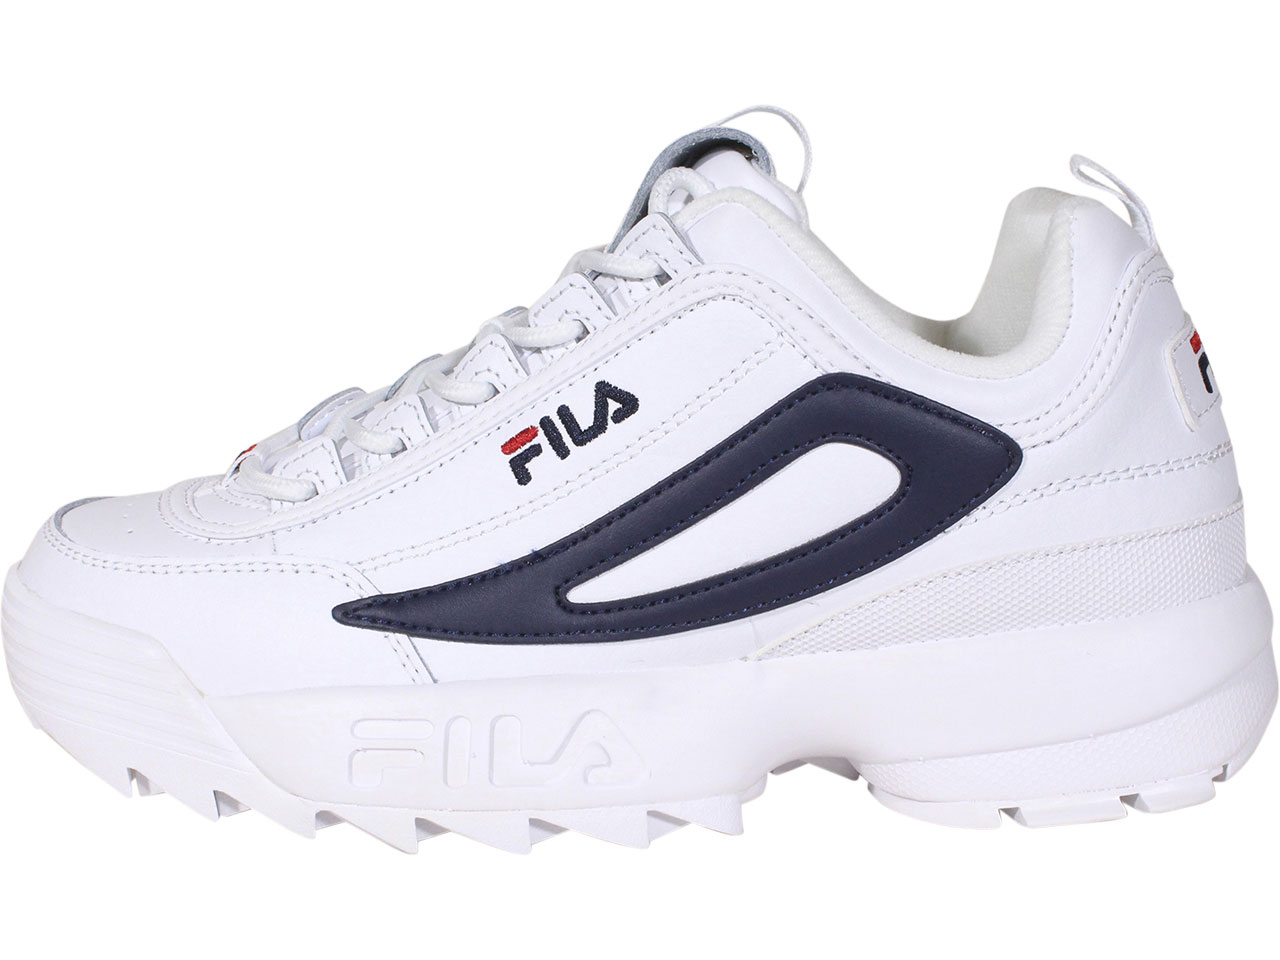 Fila Disruptor-II-XL Sneakers Men's Shoes | JoyLot.com